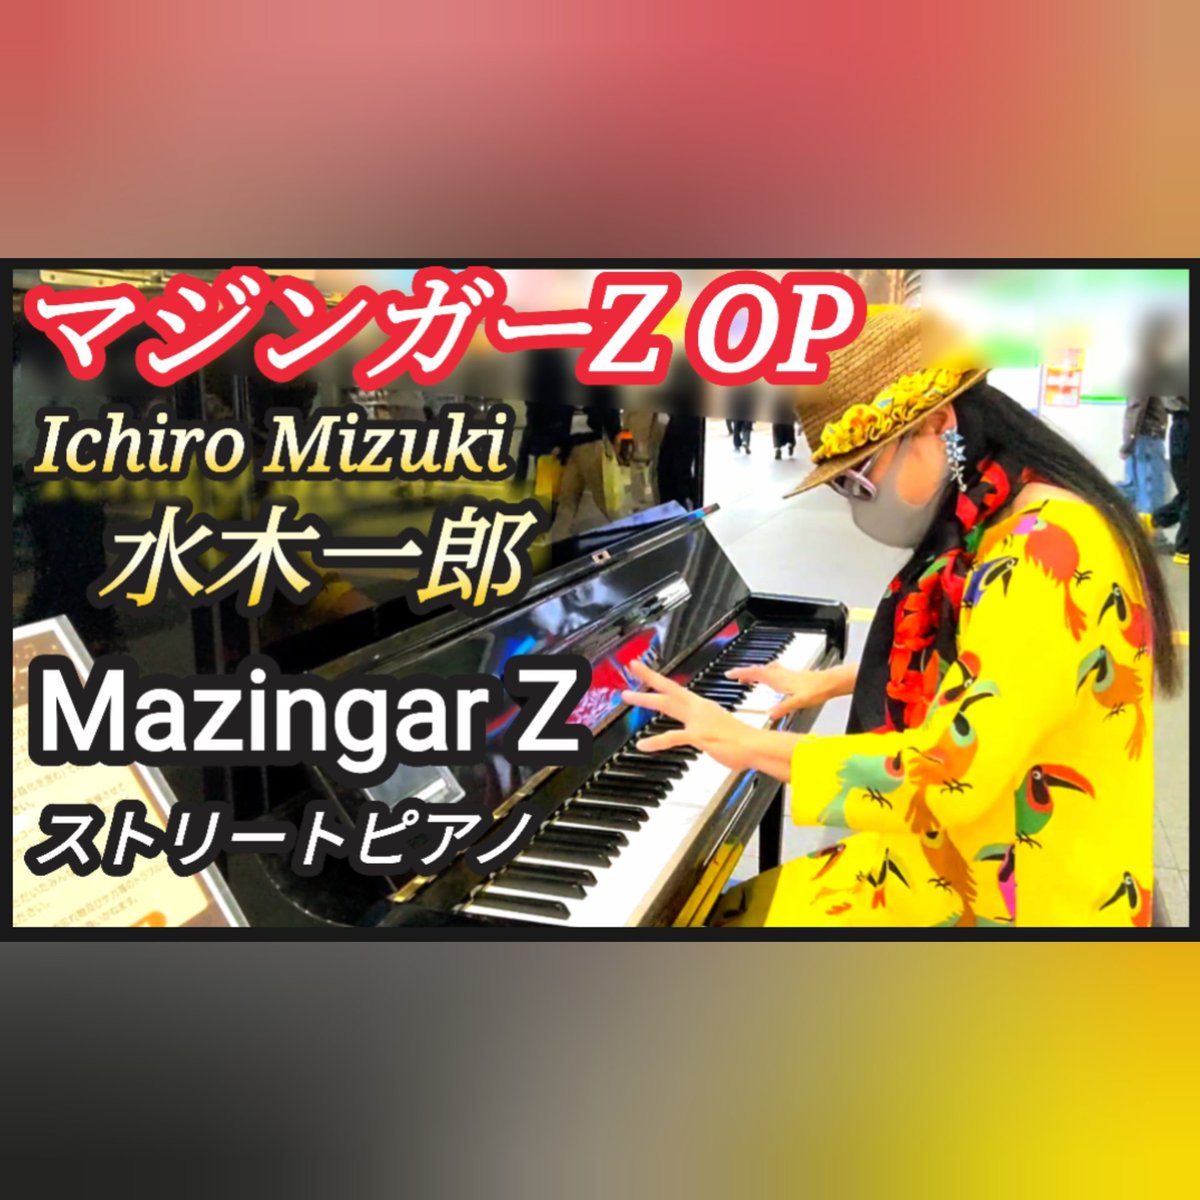 今夜のストリートピアノはマジンガーZ主題歌です

本当は、「Zのテーマ」がオープニング曲だったー！その場で聴いた人や、YouTubeのコメントに書いて下さった方のお蔭で知りました！
色々ななドラマがあるー！

youtu.be/B1QZOrZign4

#マジンガーz 
#ストリートピアノ 
#水木一郎 
#Ichiromizuki